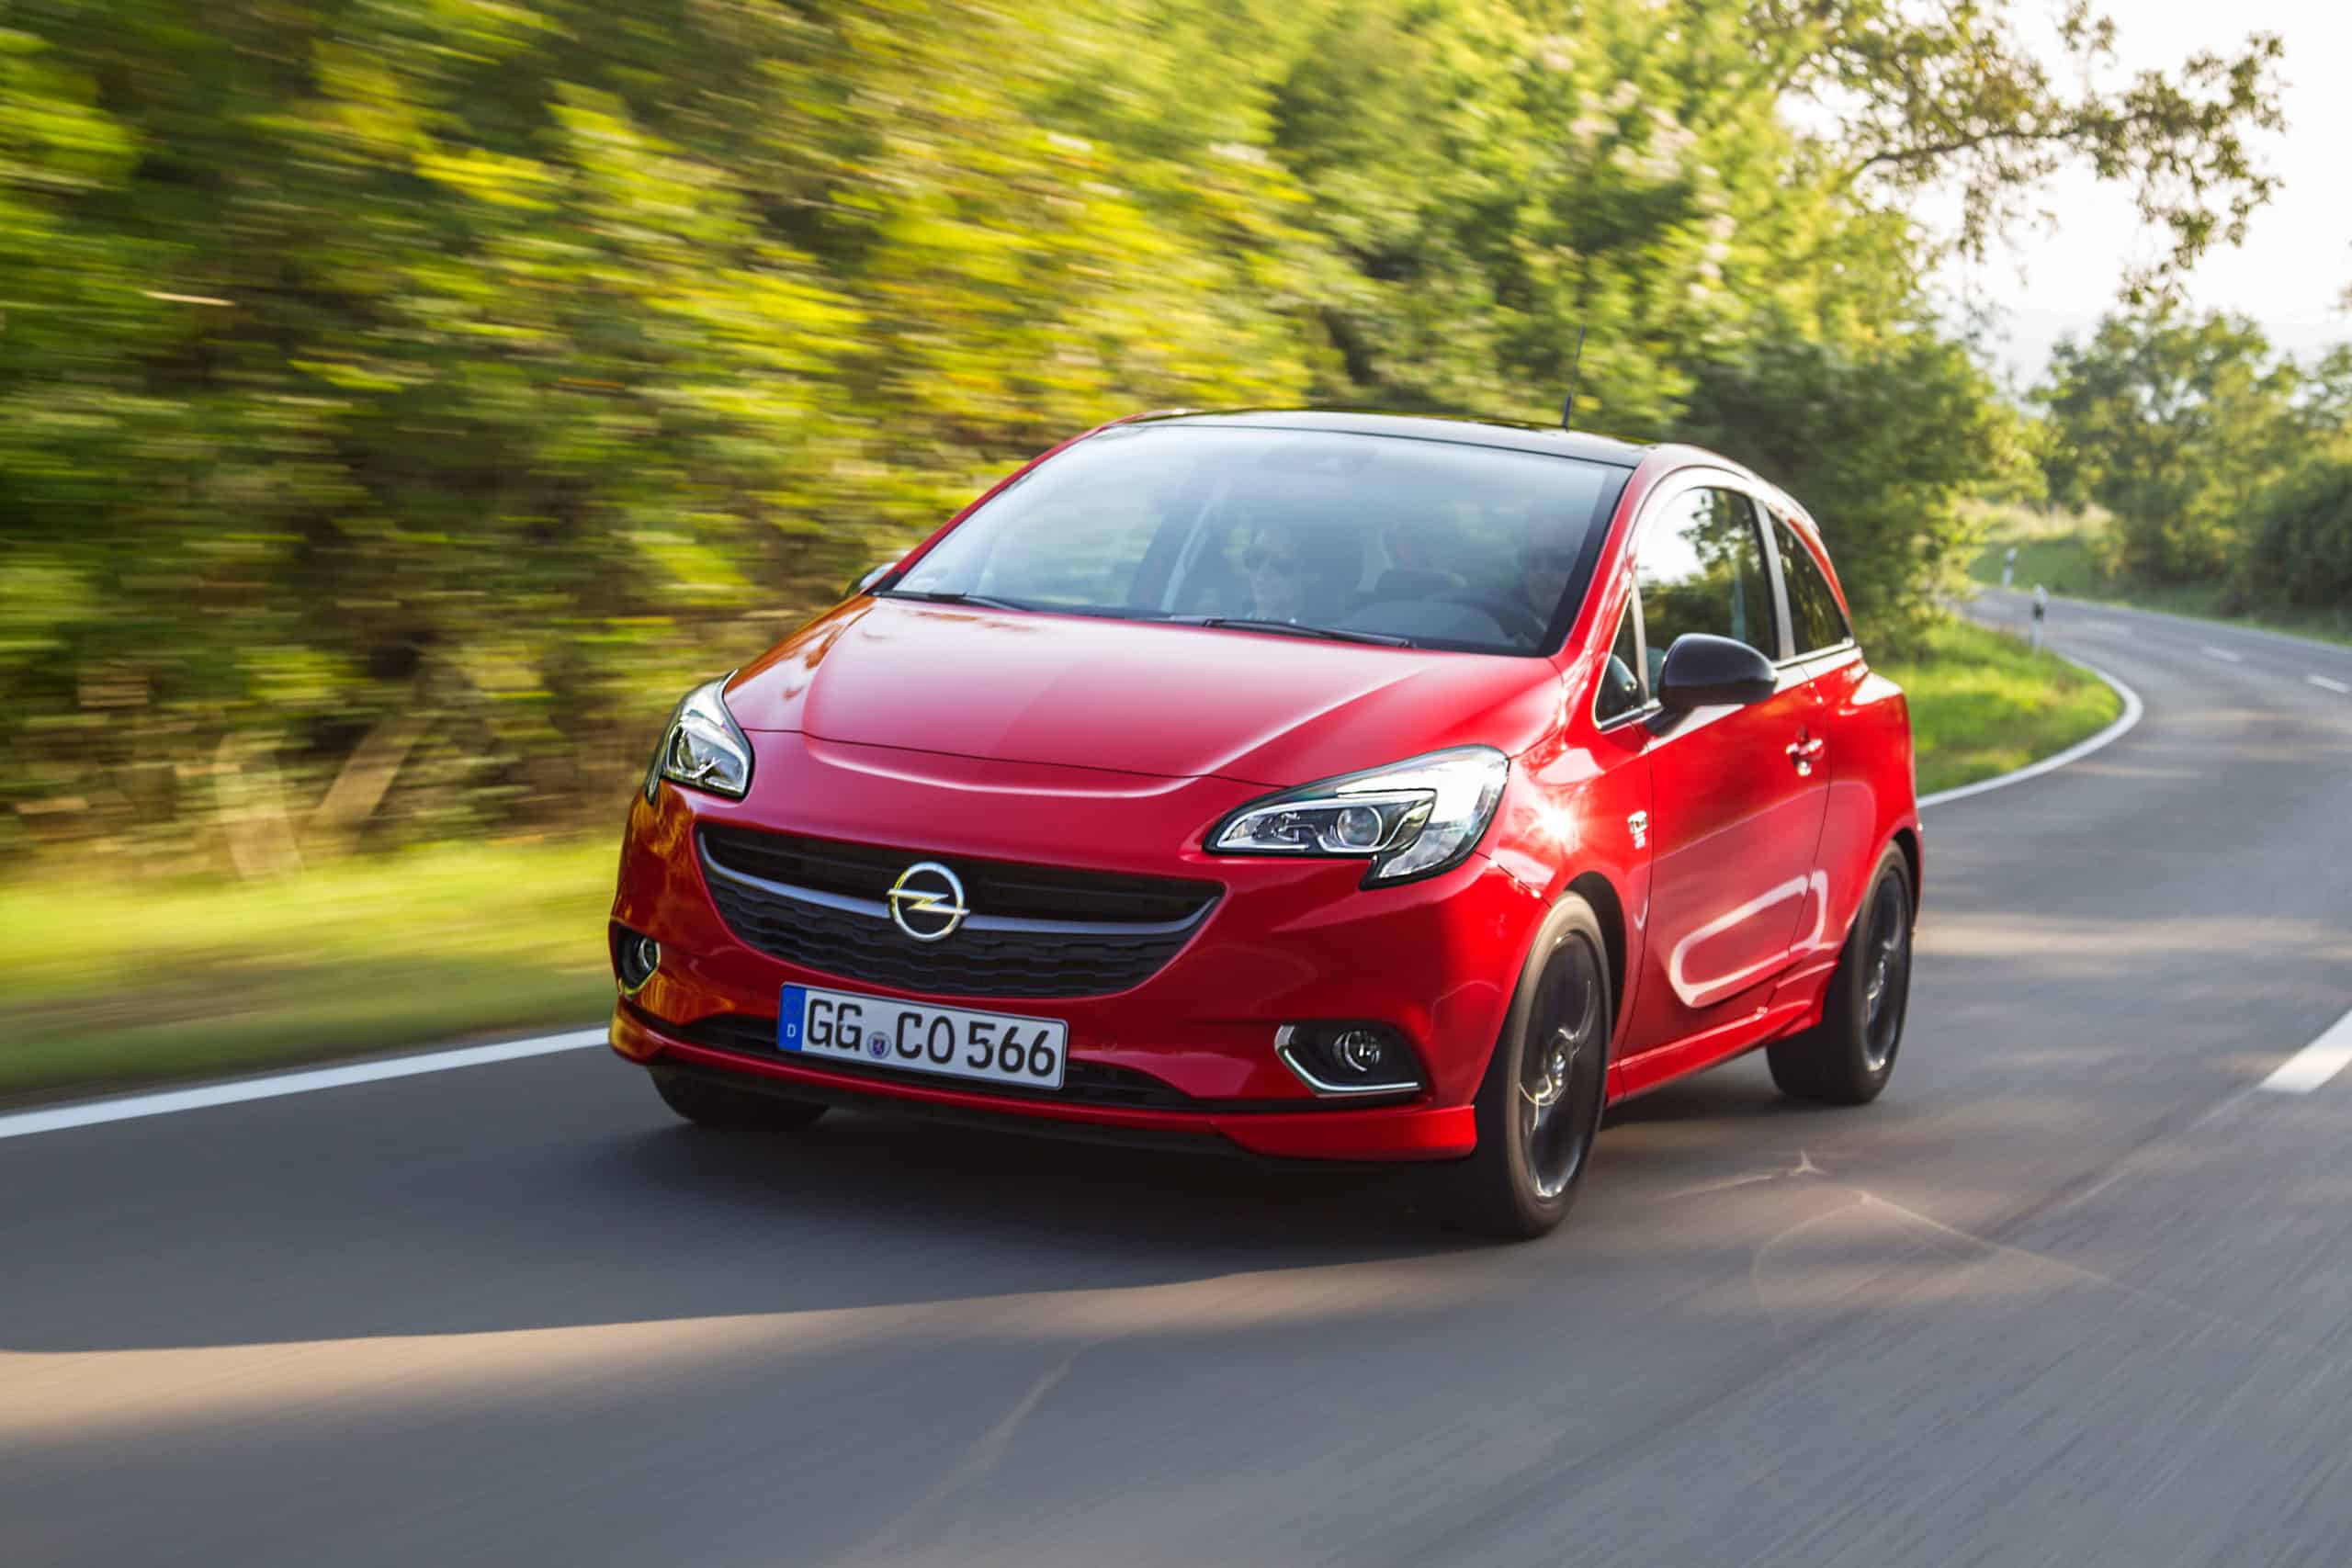 Opel Corsa-e: das E-Auto ab 72 Euro netto im Monat leasen - AUTO BILD